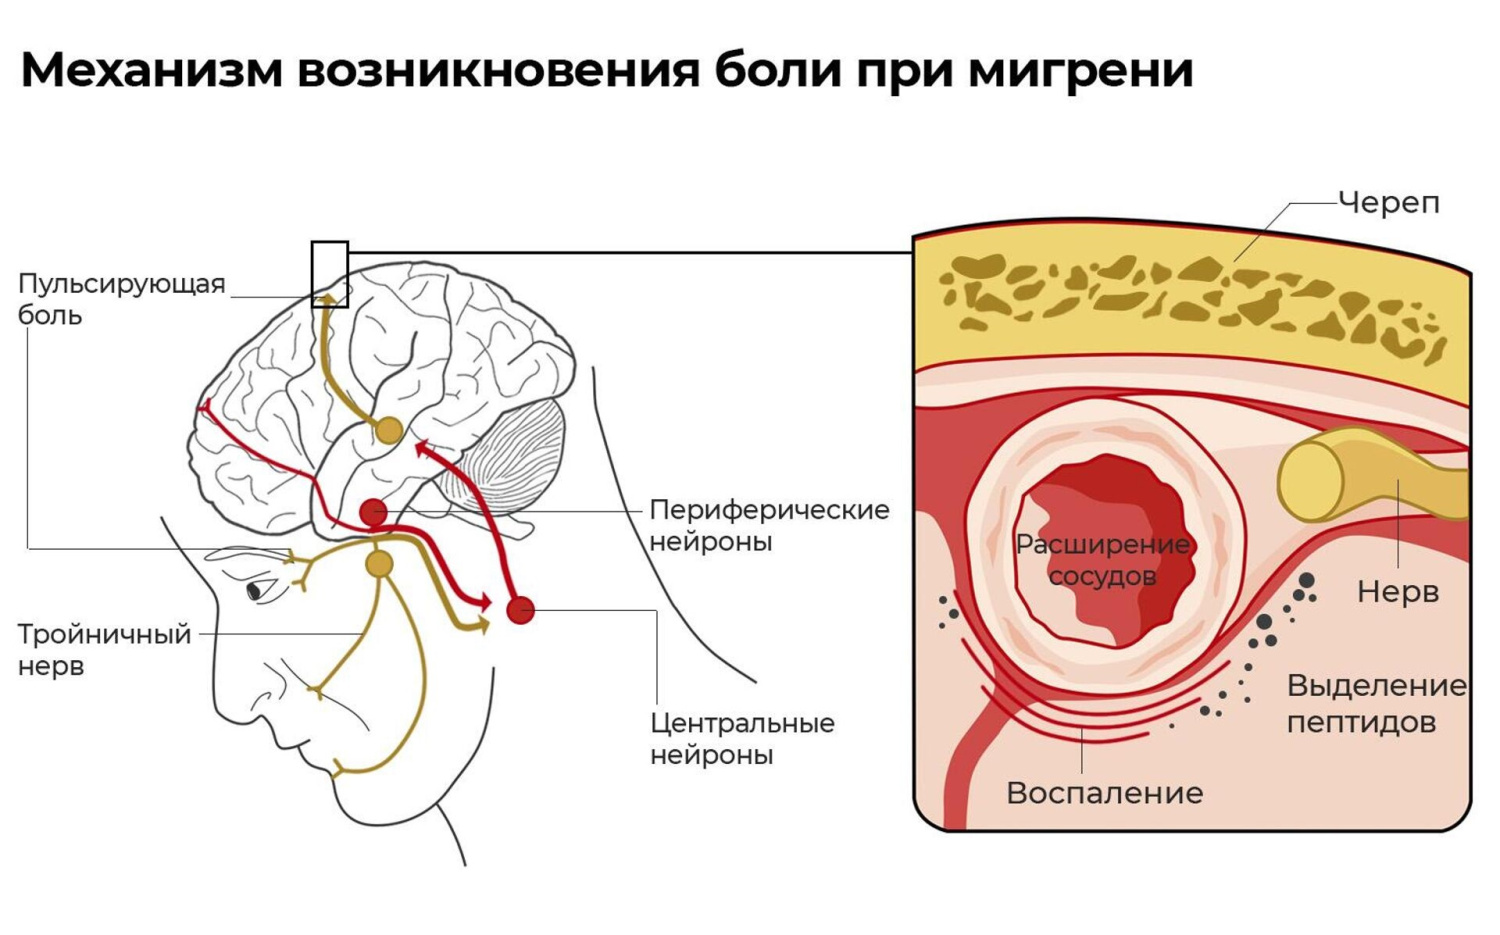 Механизм возникновения боли при мигрени